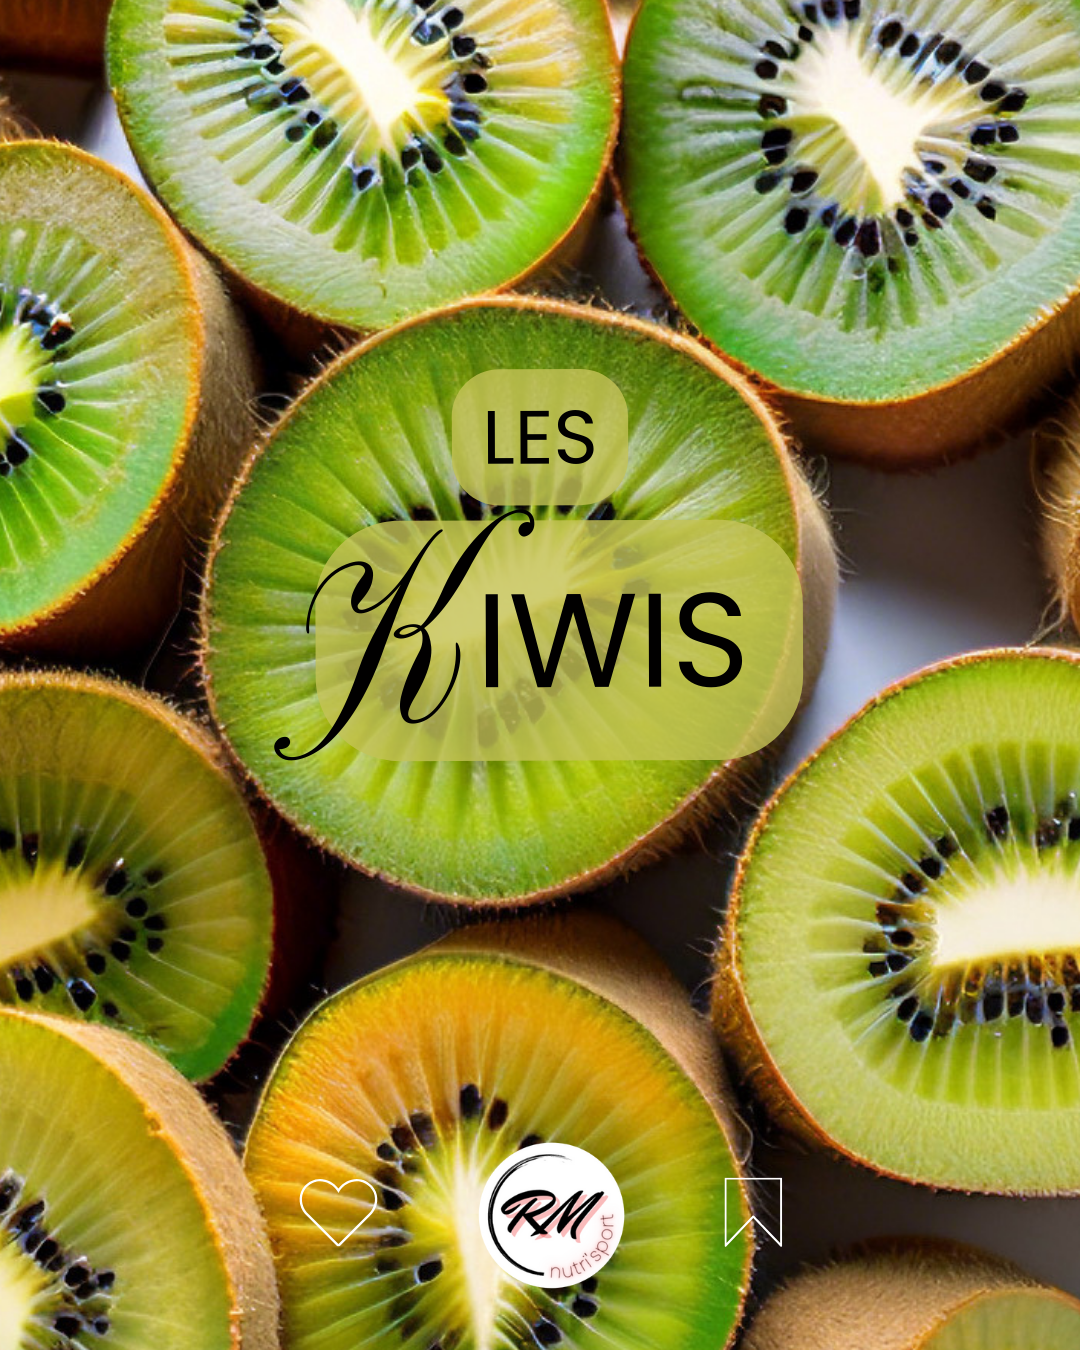 – Diététique : les Kiwis